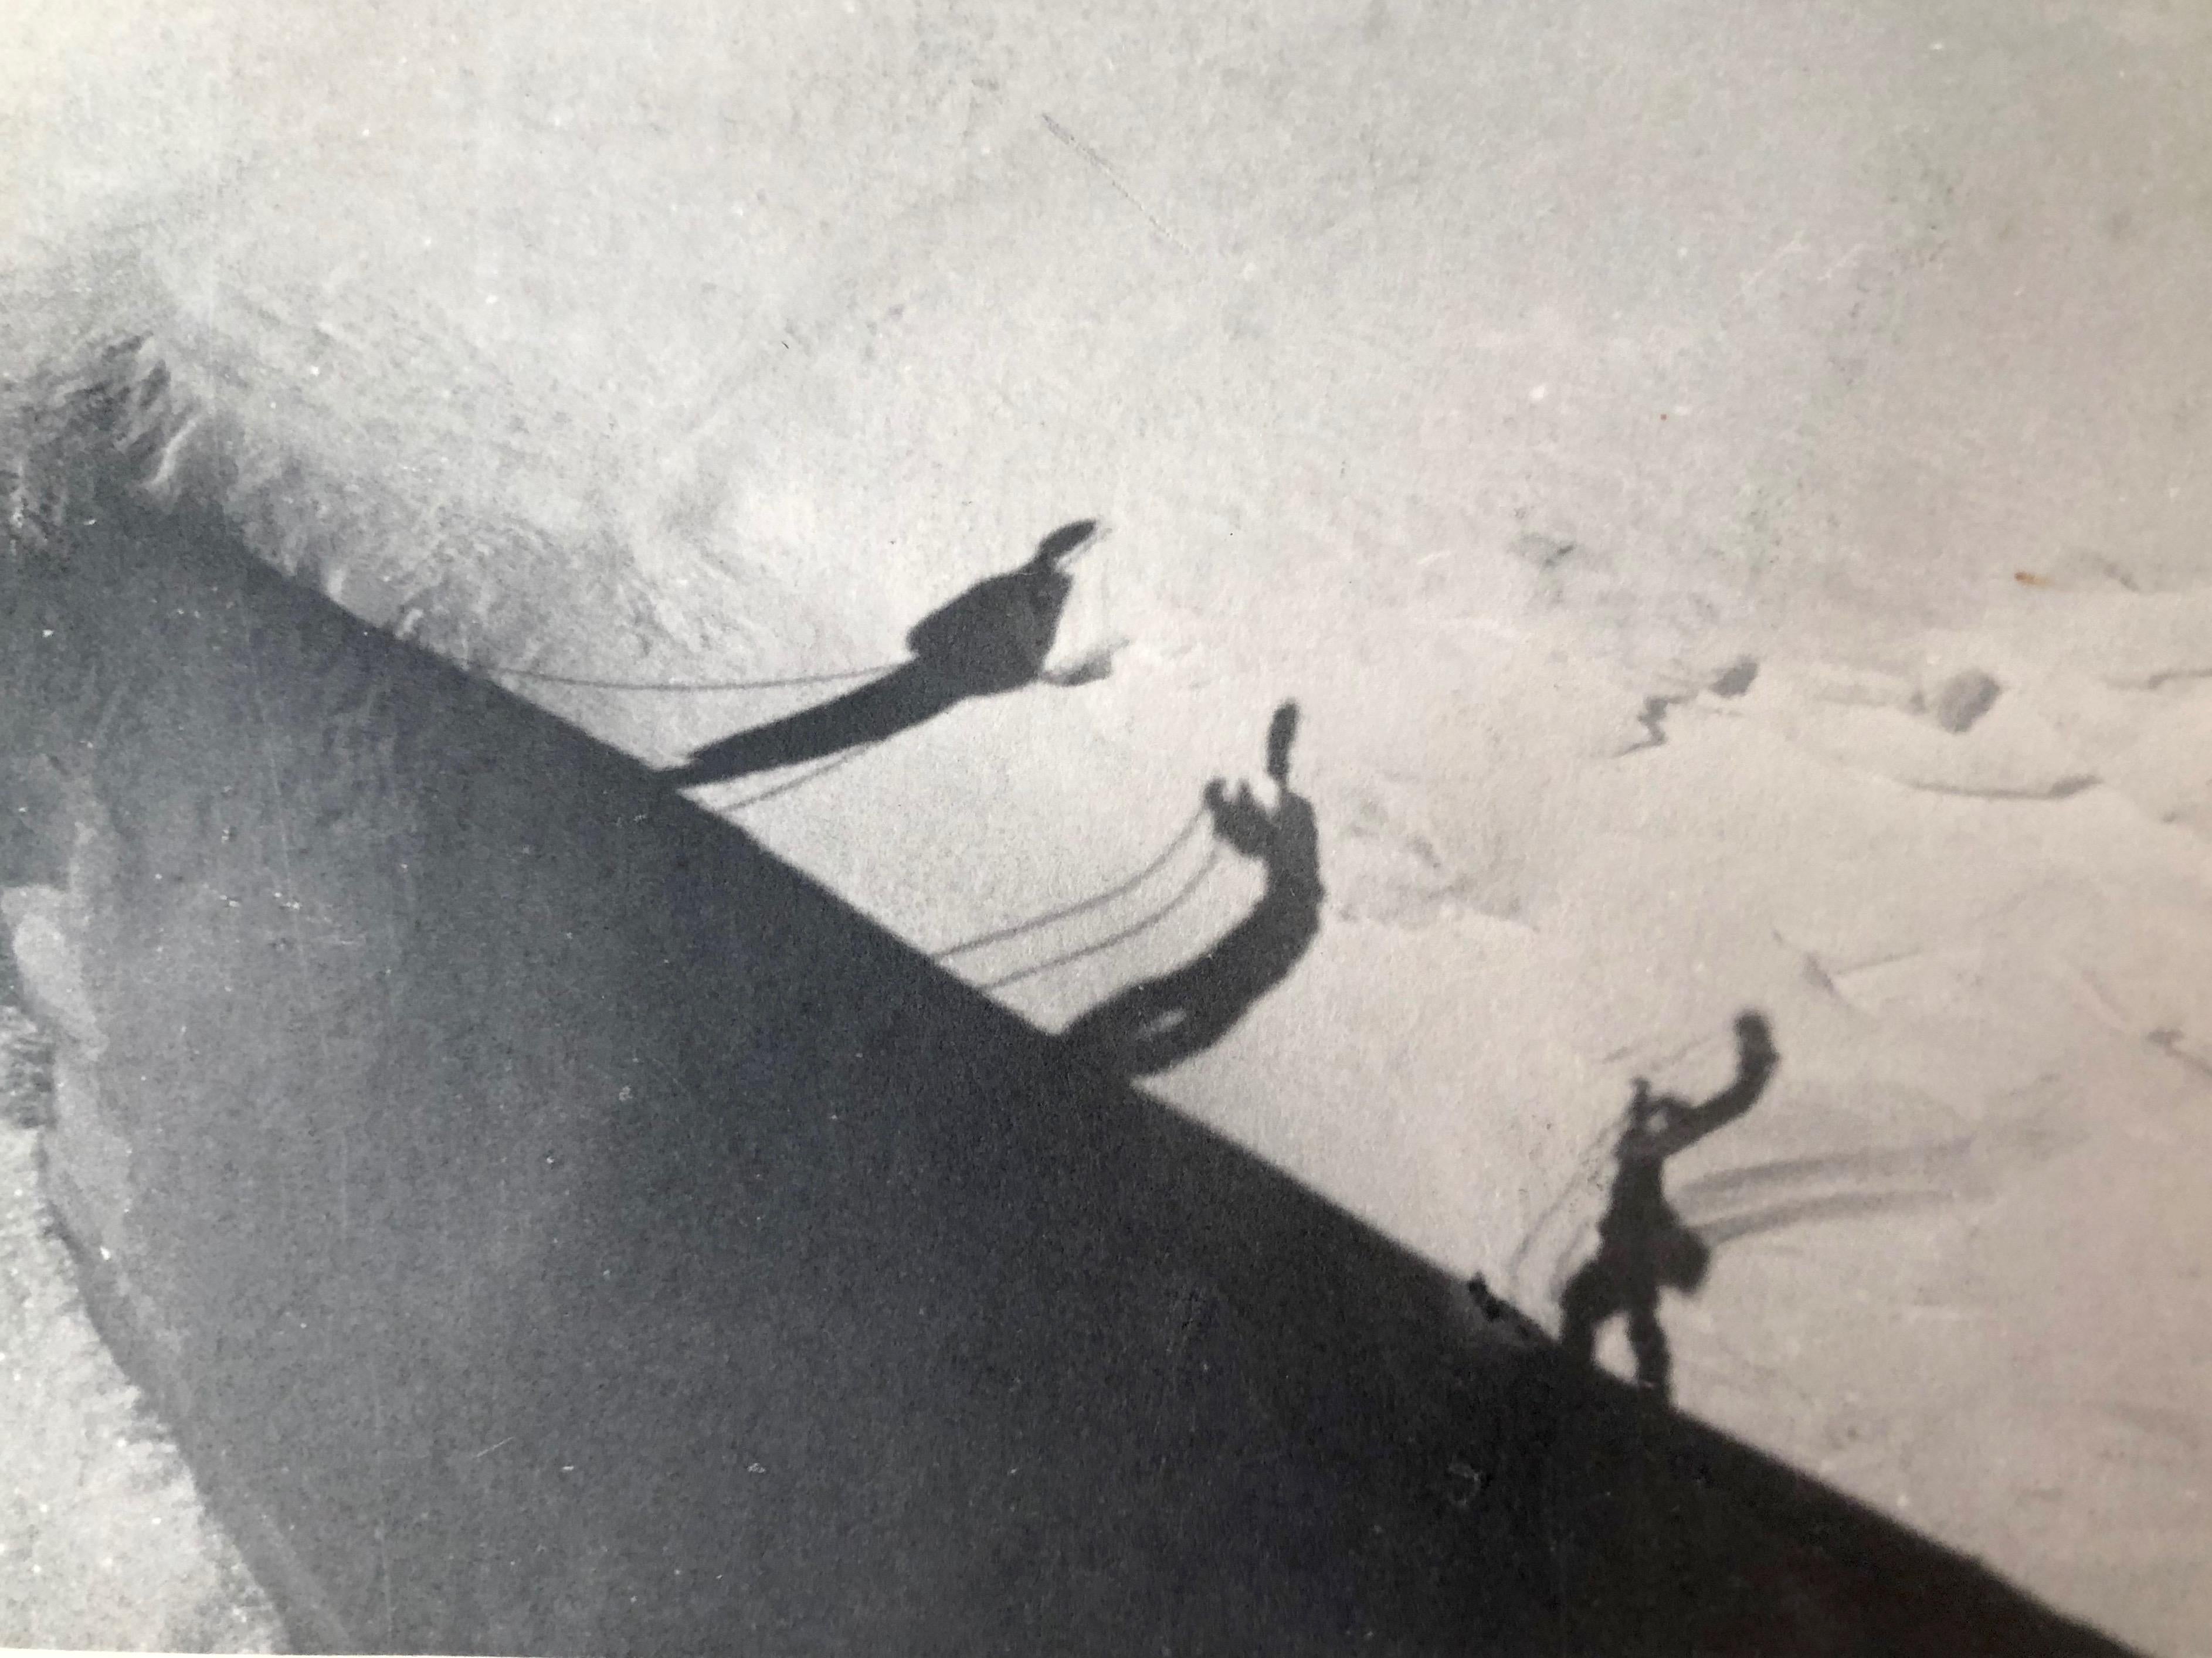 Ein schöner Satz von drei Kunstfotografien von Fritz Grögl aus dem Jahr 1932. Grögl gewann die Silbermedaille für hervorragende künstlerische Fotografie
im Jahr 1932 von der österreichischen Regierung. Diese Fotogruppe war Teil einer Ausstellung,